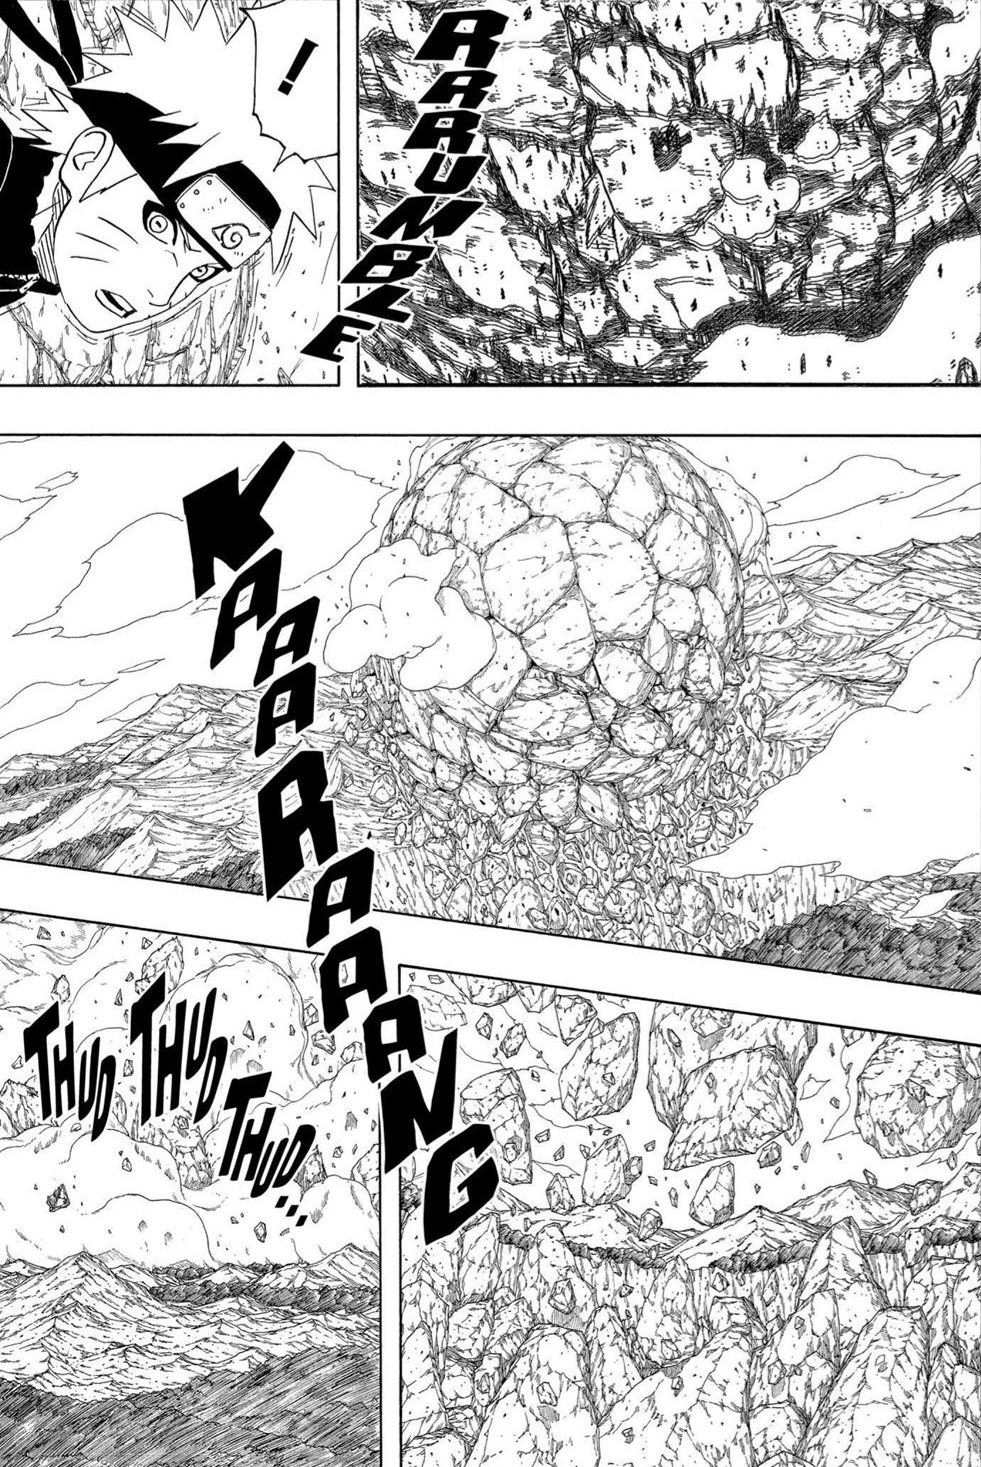 Magatamas e RasenShuriken seriam suficientes para destruir o CT do Edo Nagato? - Página 4 03_110